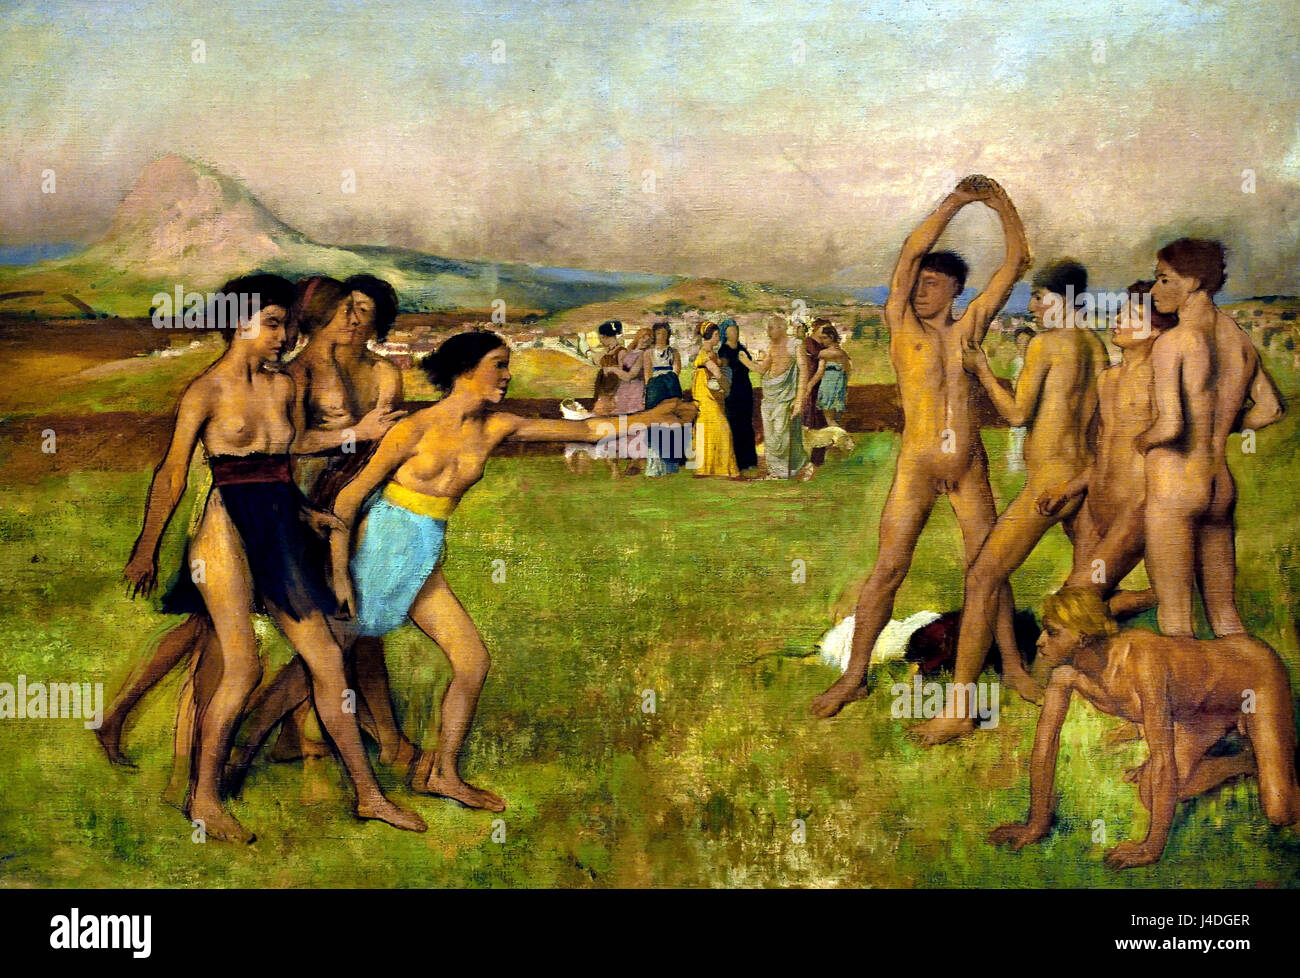 Junge Spartaner Ausübung 1860 von Hilaire Germain Edgar Degas 1834-1917 Frankreich Französisch (Plutarch schreibt von Lycurgus, der Gesetzgeber des alten Sparta bestellen spartanische Mädchen in wrestling Wettbewerbe engagieren, hier fordern sie die jungen zu kämpfen.) Stockfoto